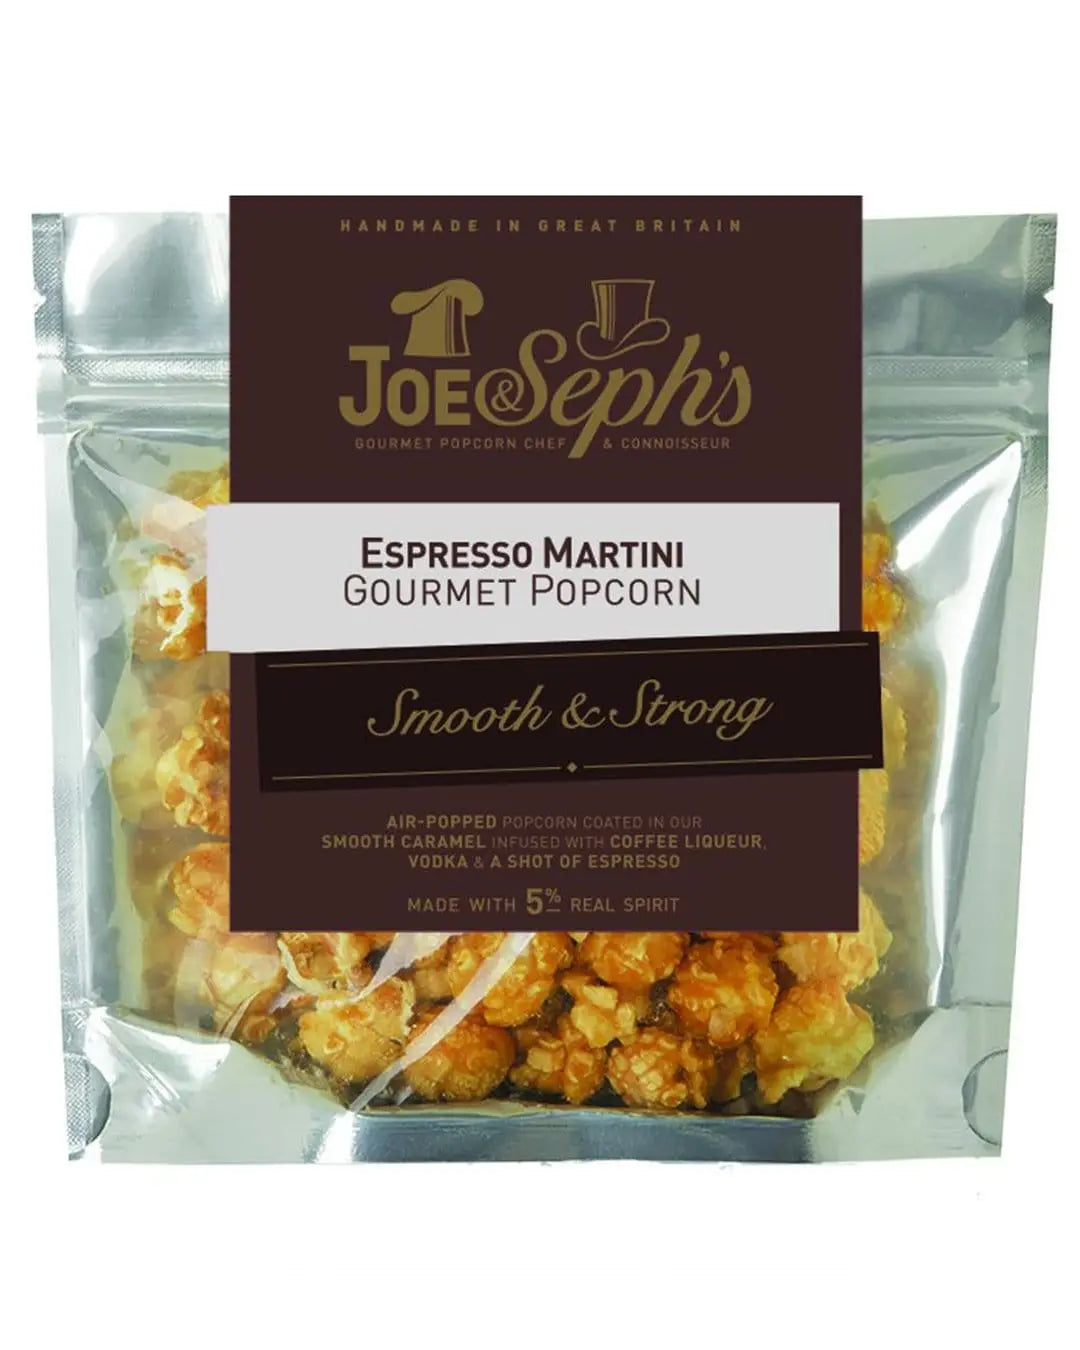 Joe & Seph's Espresso Martini Popcorn Pouch, 32 g Popcorn 0708022178591